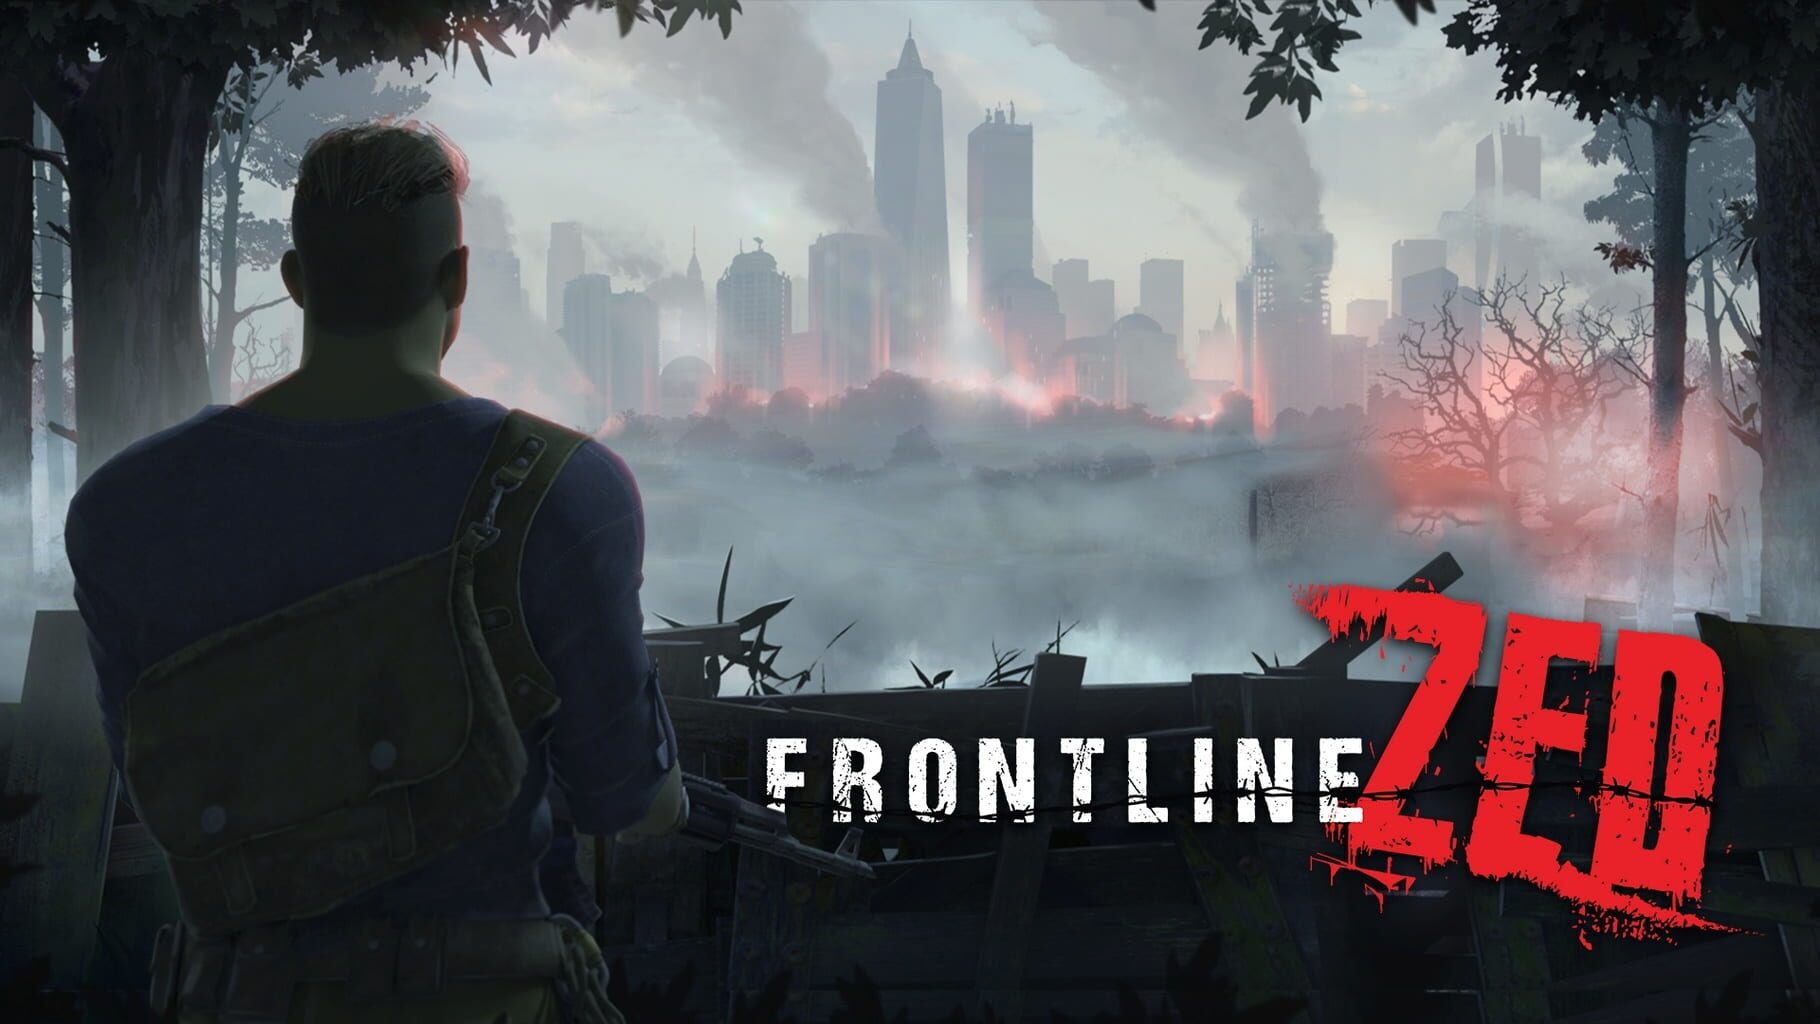 Frontline Zed artwork